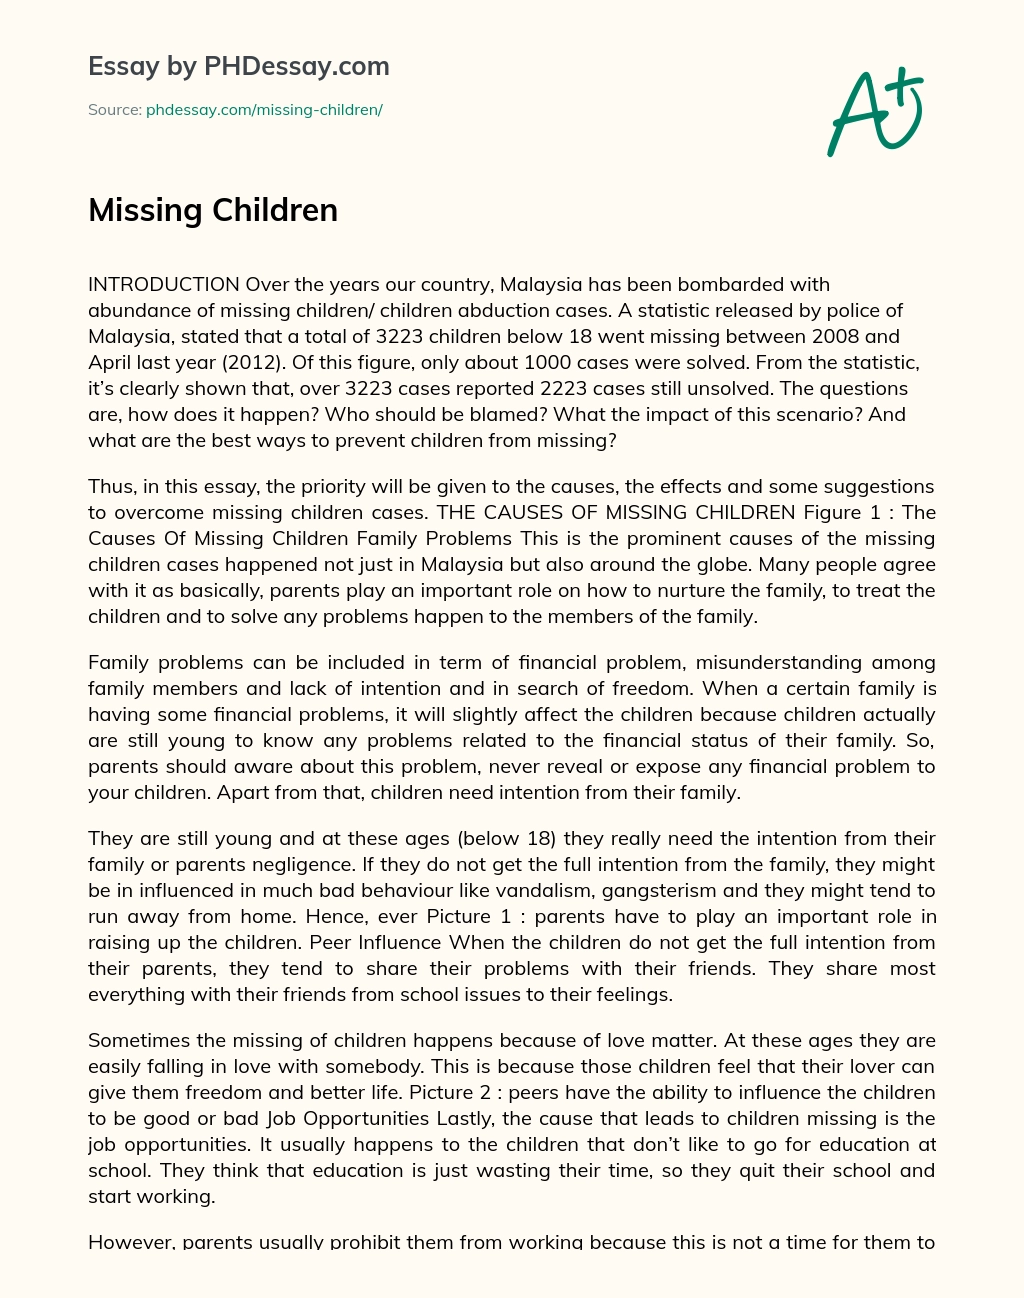 Missing Children essay